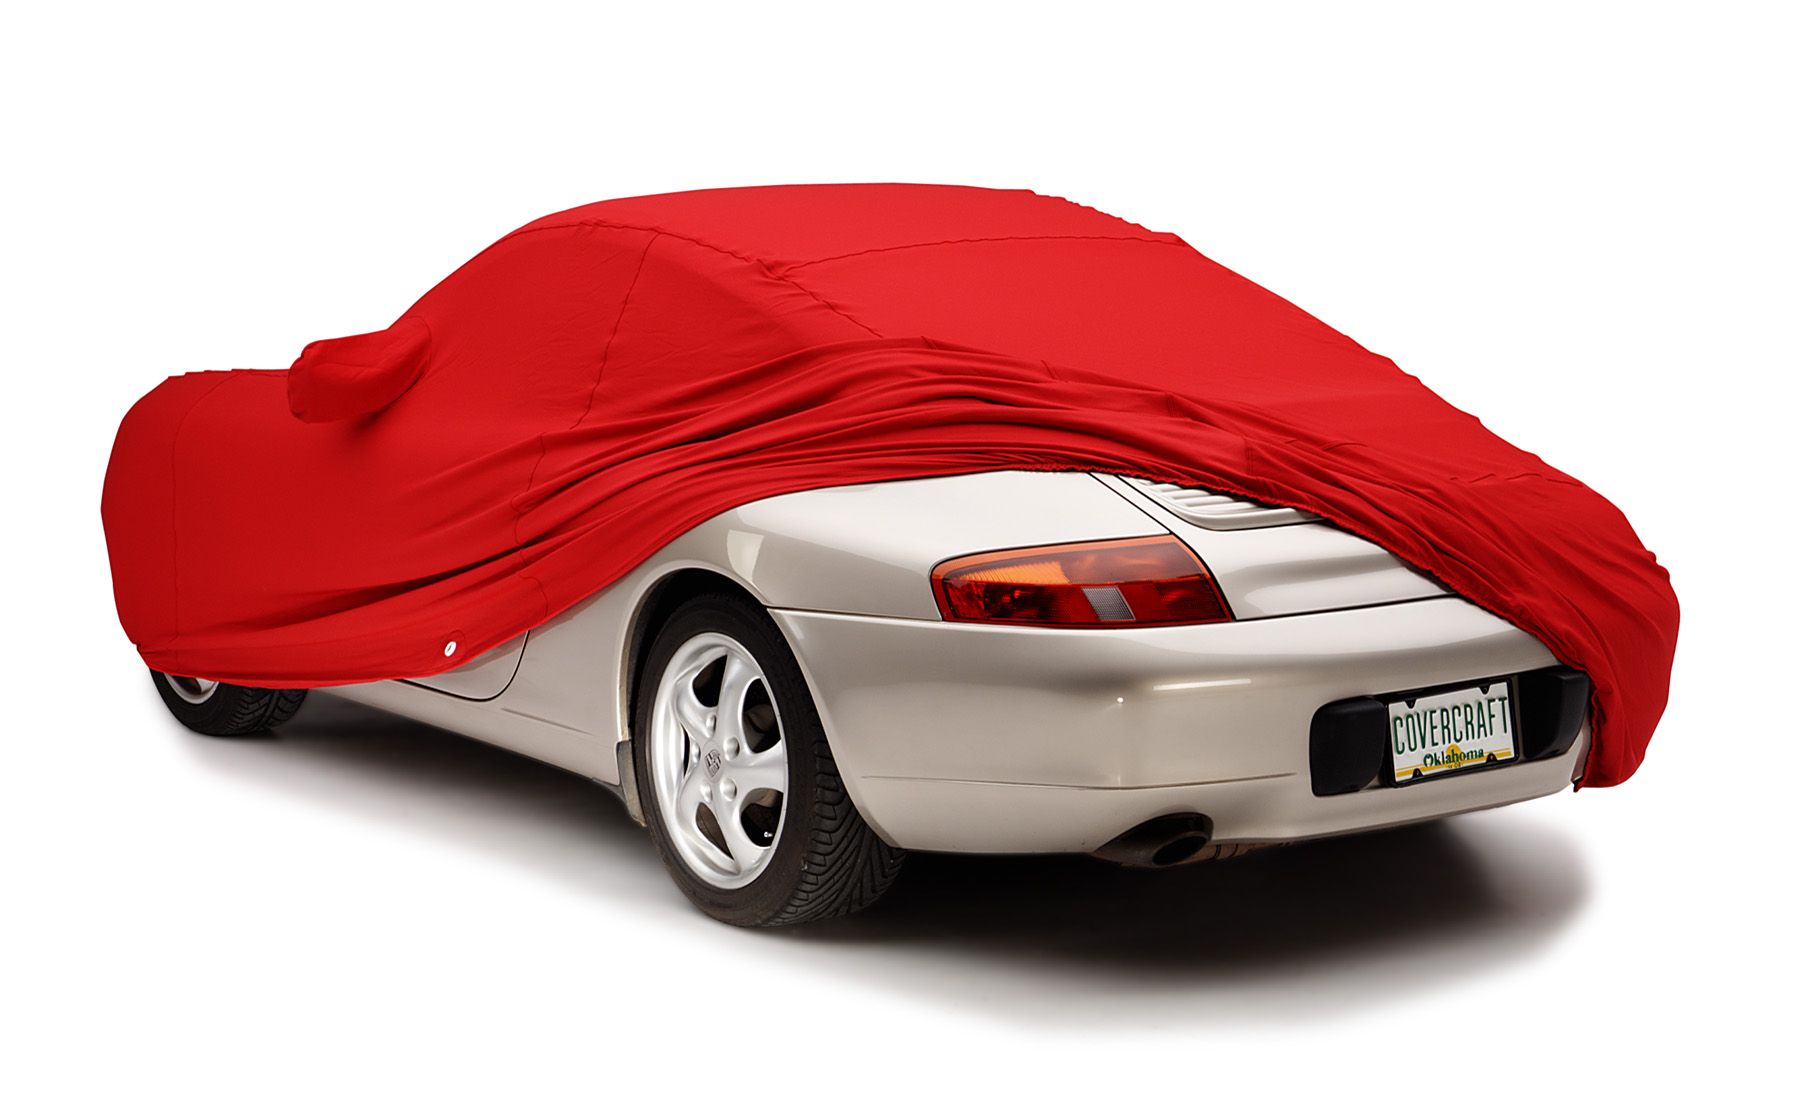 Form-Fit inomhus 1999 Porsche 996 rött uppdraget bak